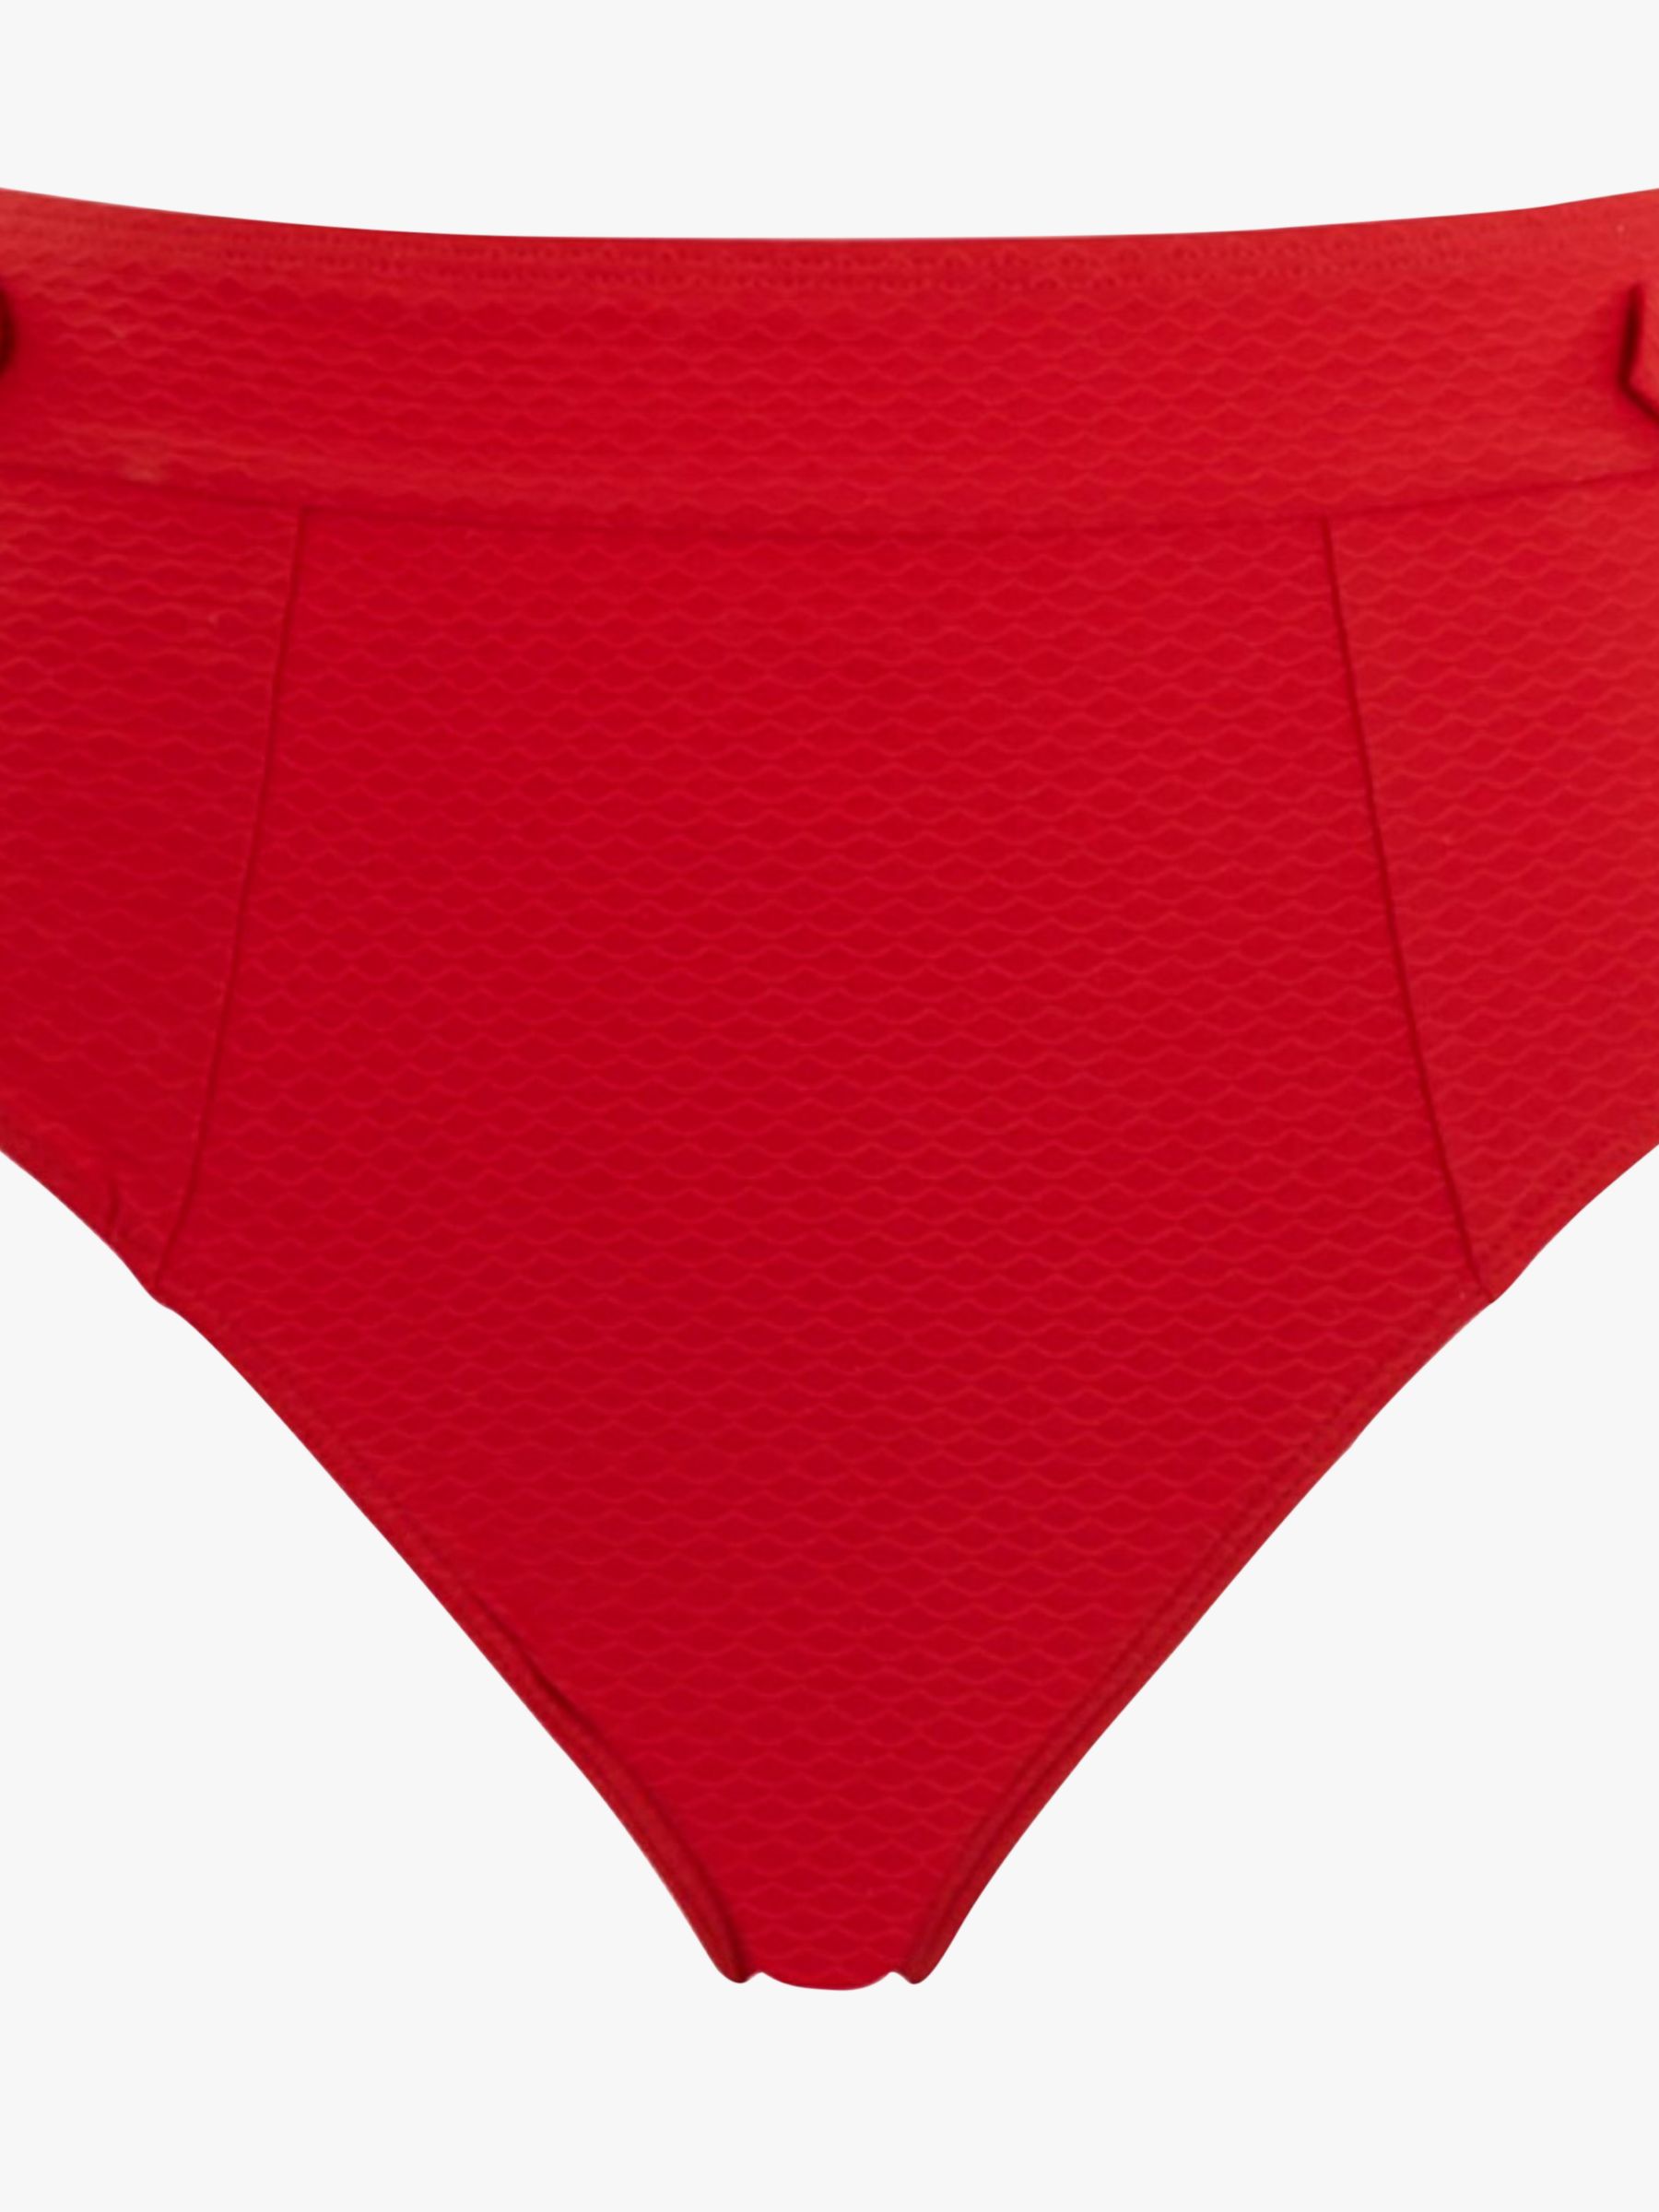 Panache Marianna High Waist Bikini Bottoms, Crimson, 8